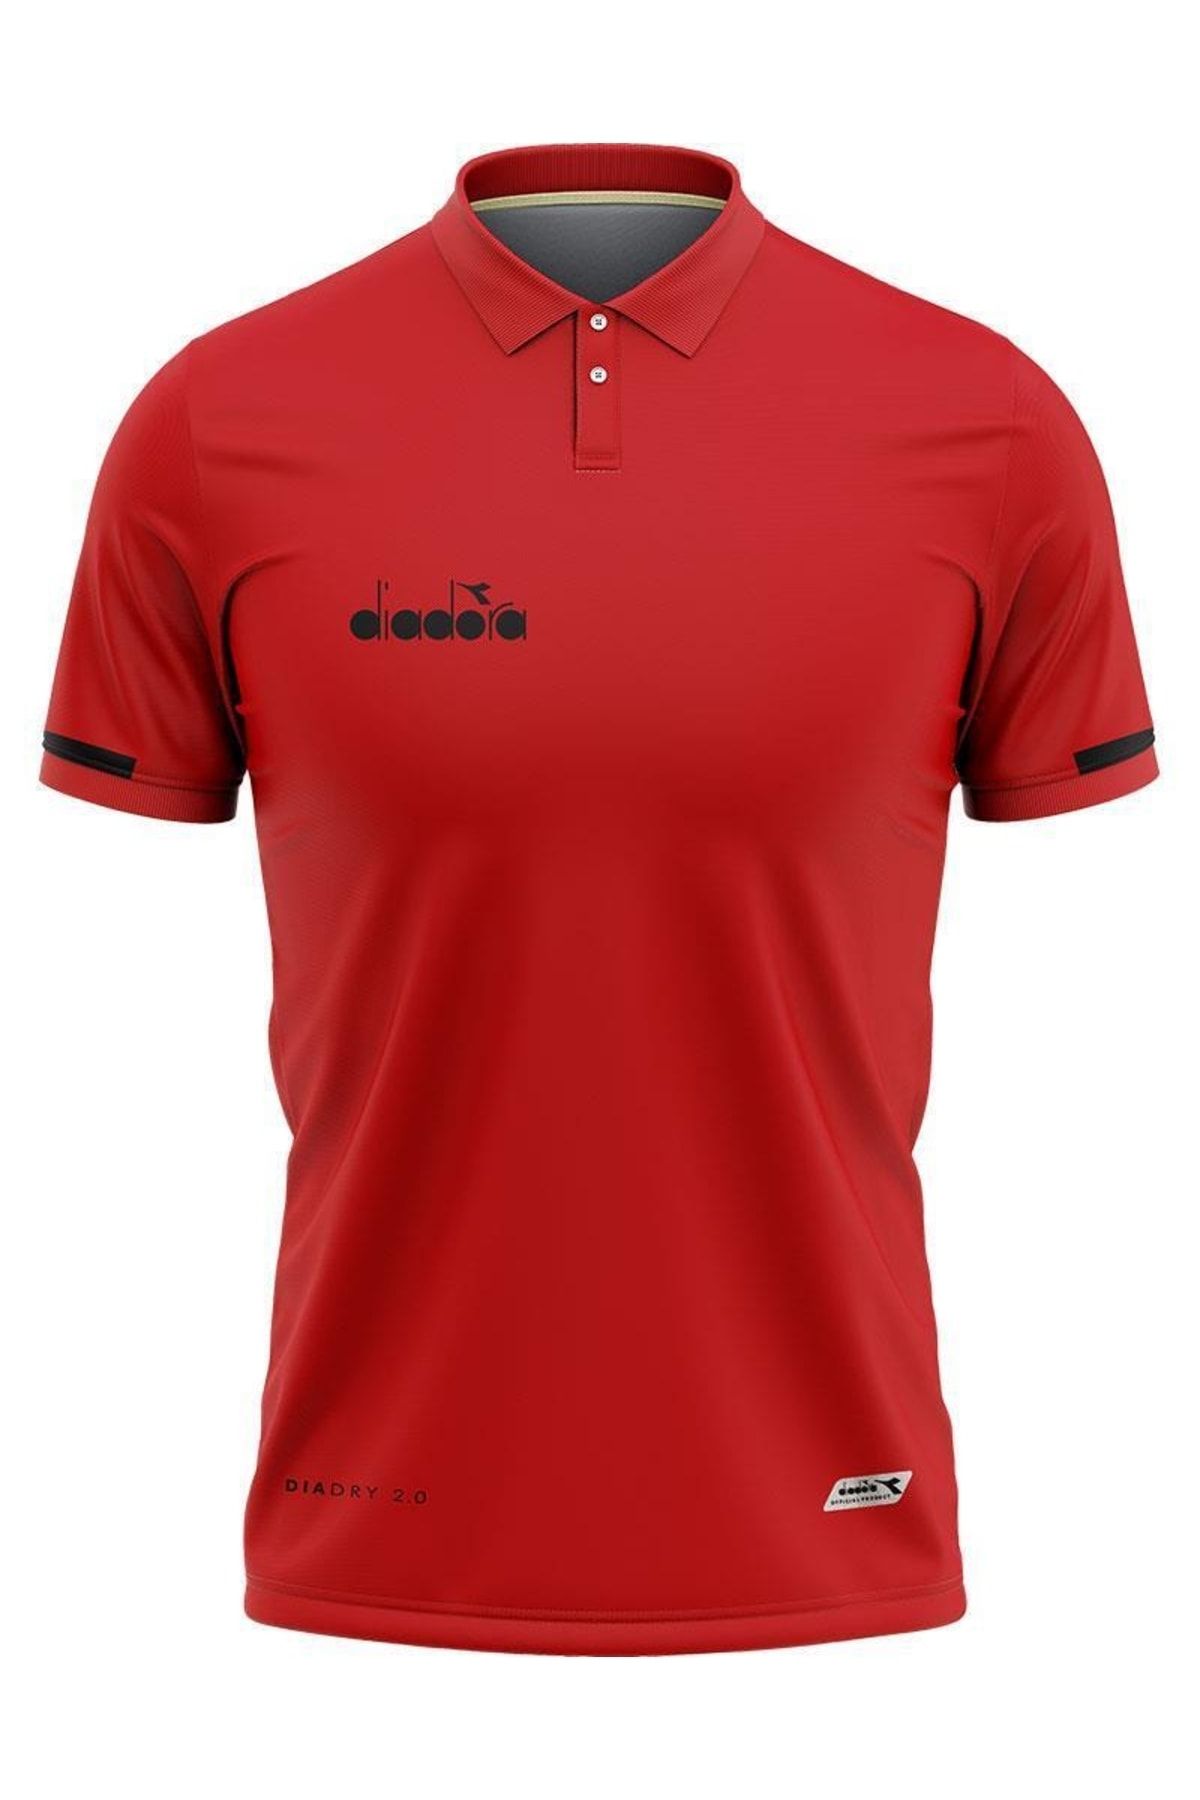 Diadora Venüs Pamuklu Kamp T-shirt Kırmızı